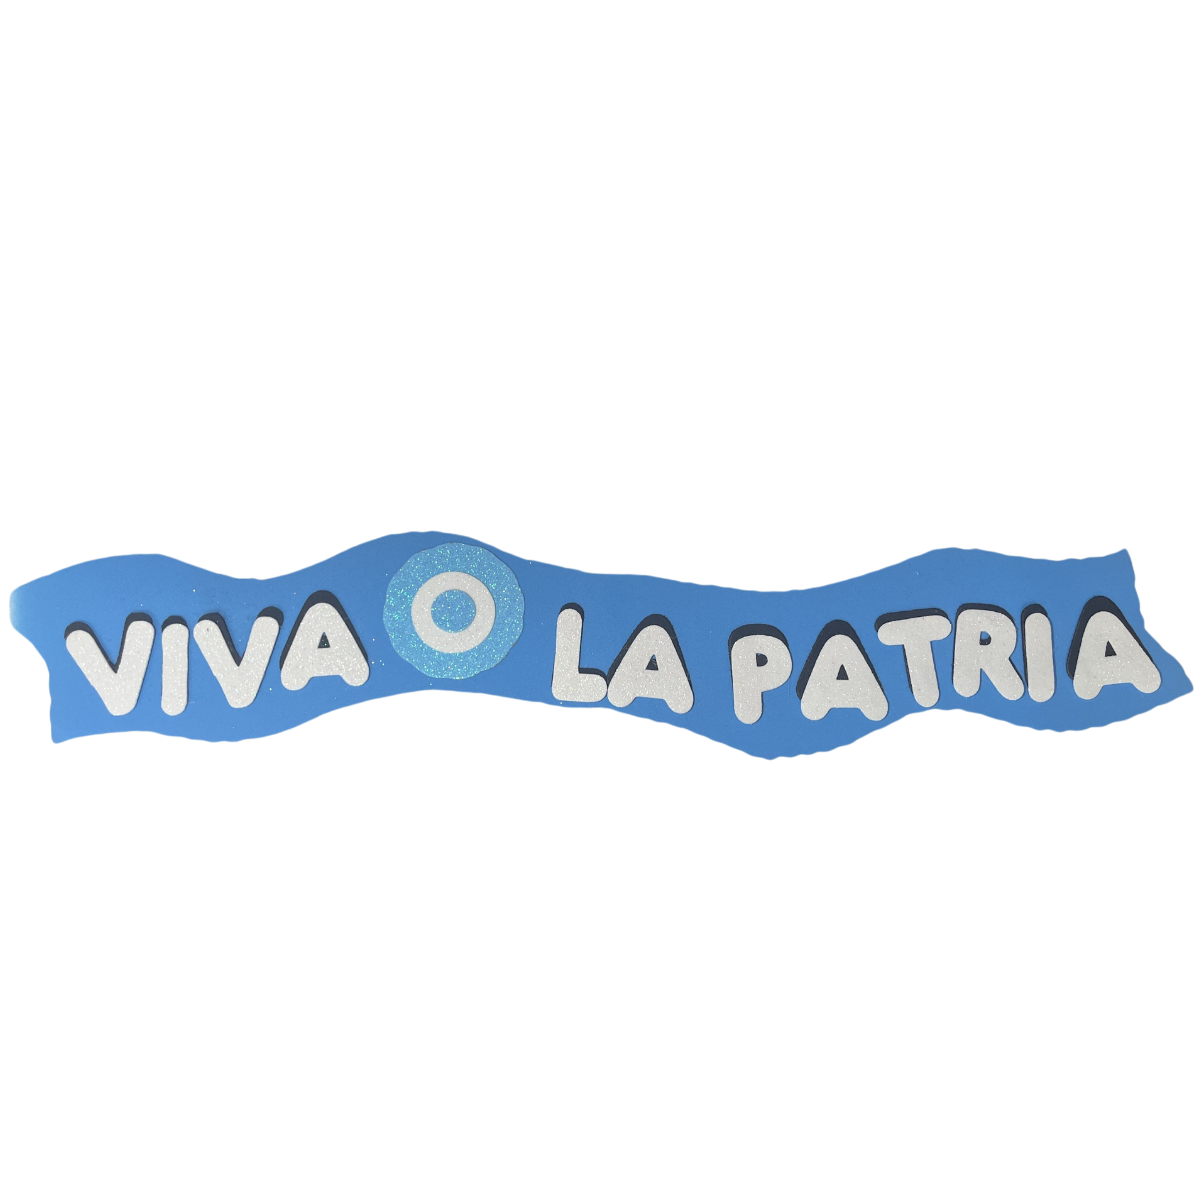 Cartel Viva La Patria Celeste